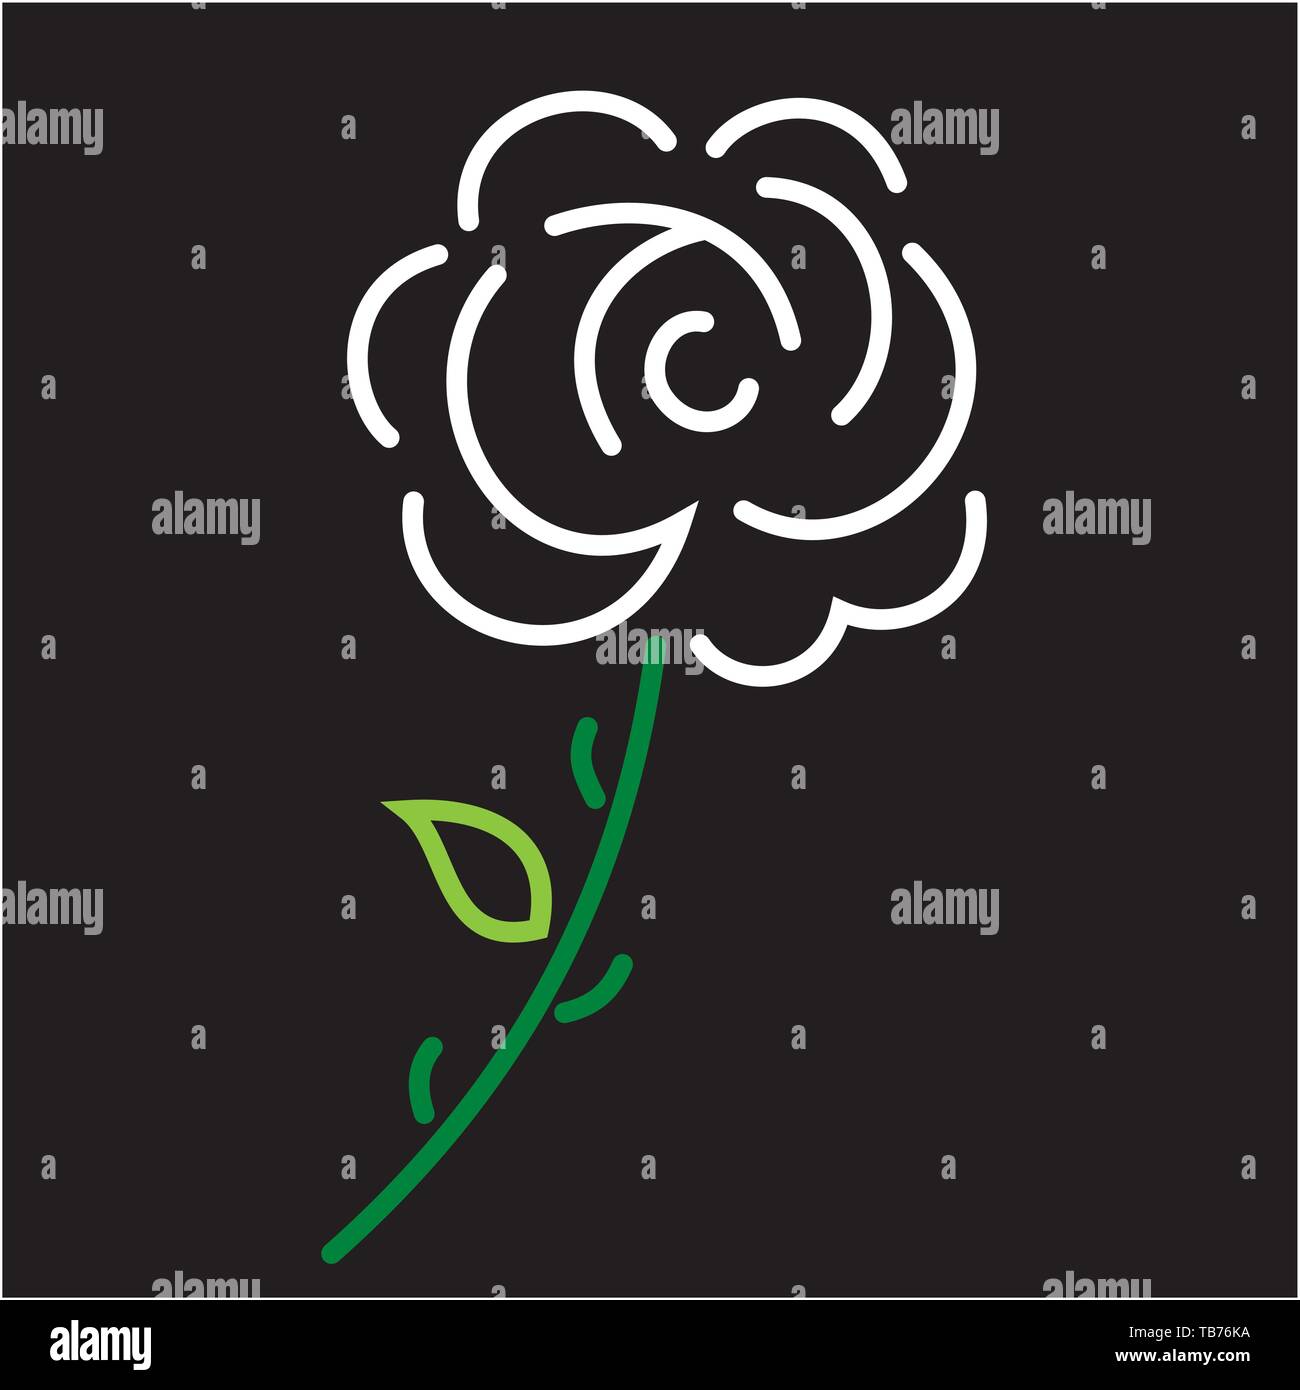 Illustrazione Vettoriale. Rosa Bianca icona resa da linee geometriche su sfondo nero. Illustrazione Vettoriale